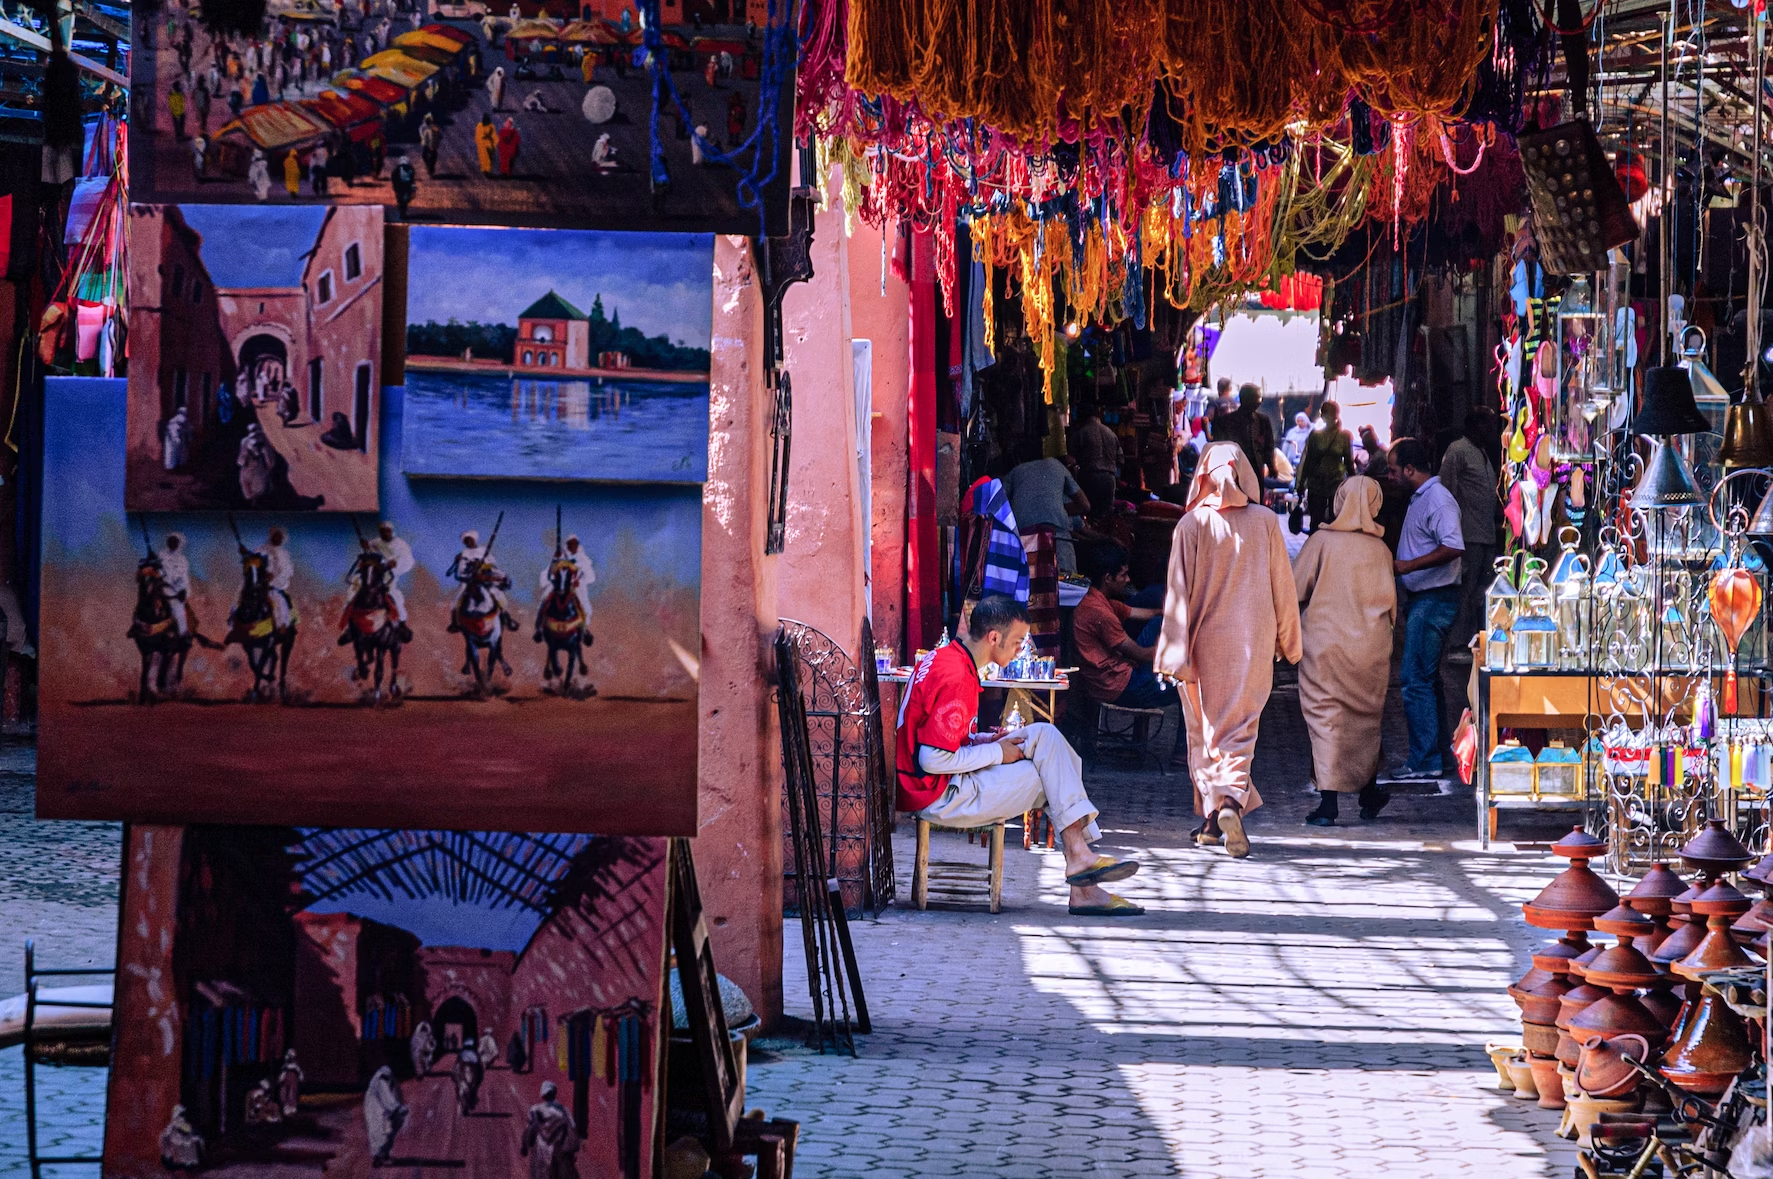 marrakech travel on a budget
